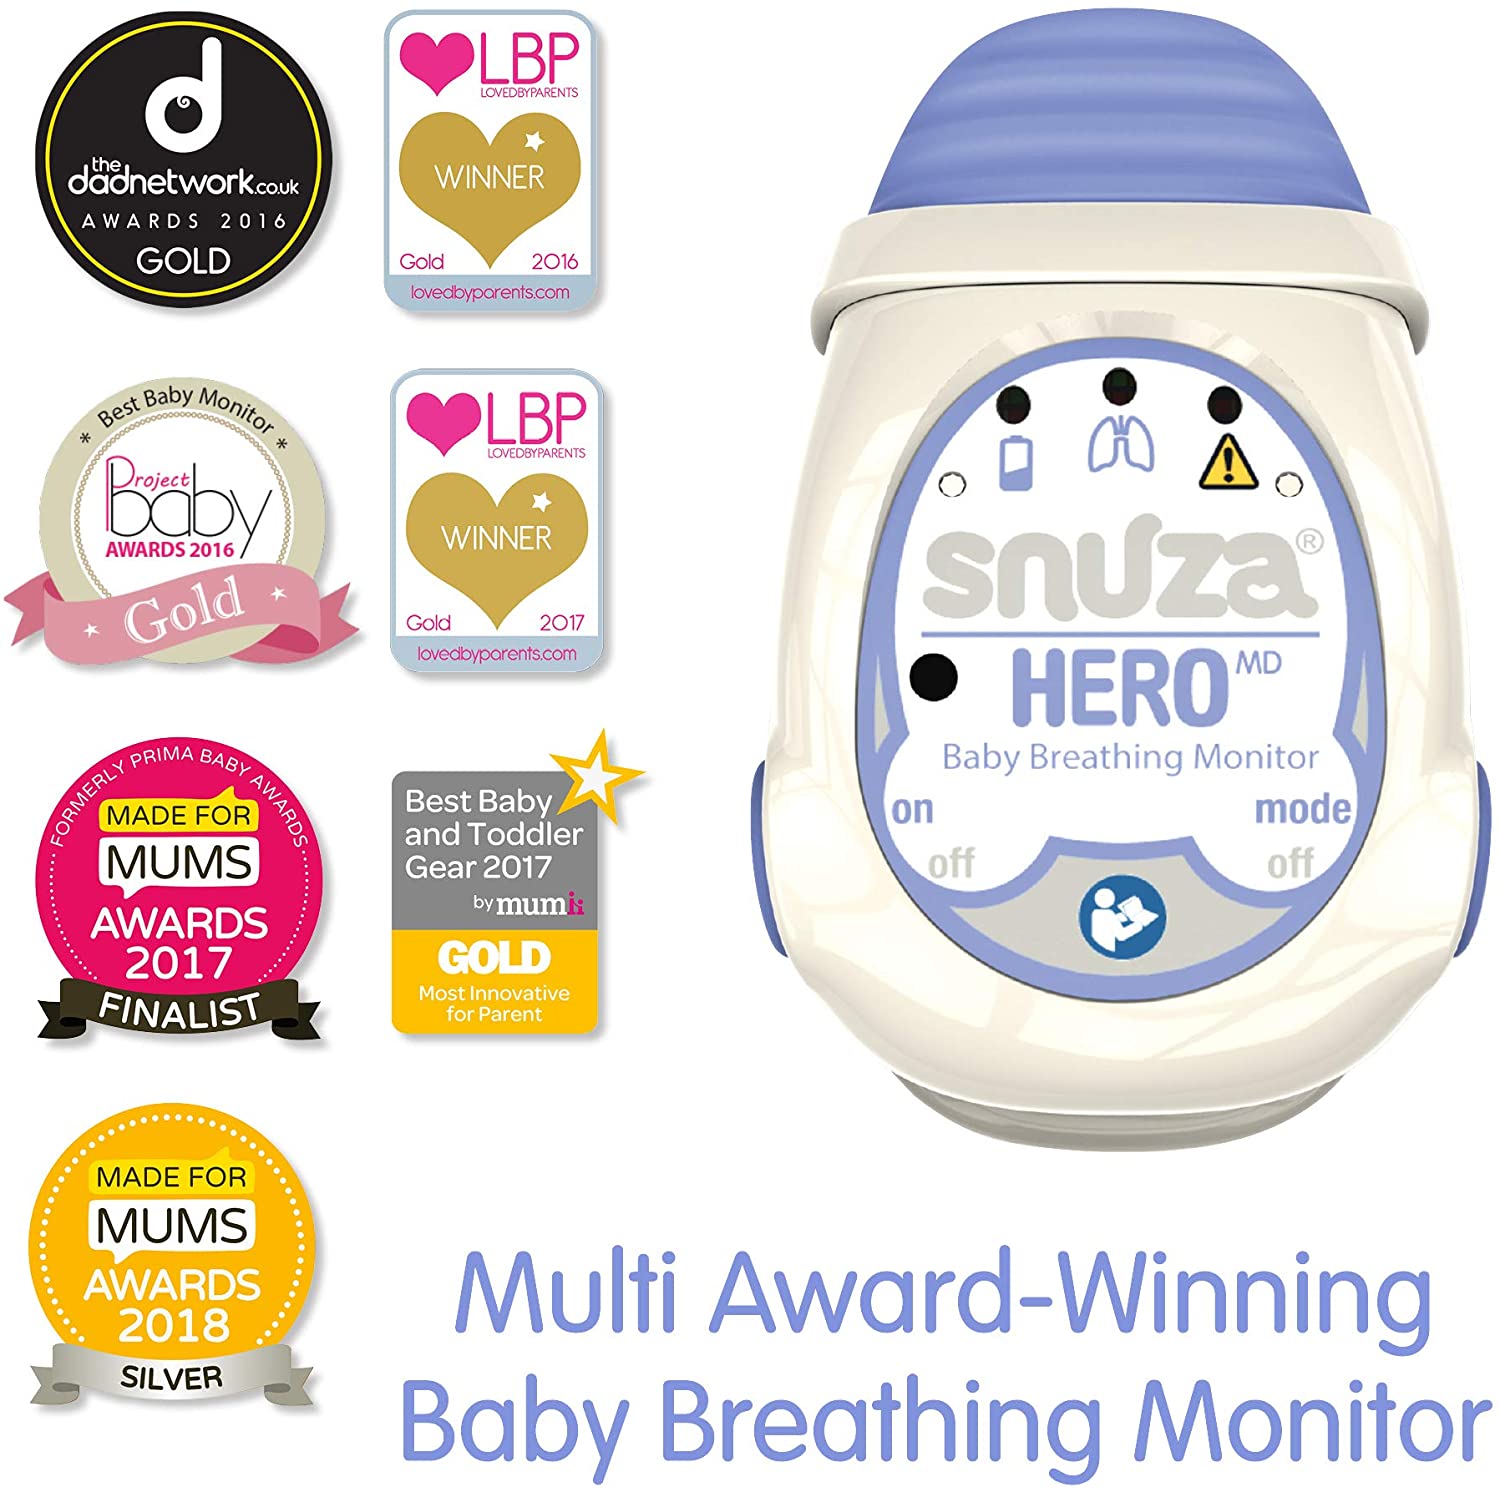 Moniteur respiratoire portable pour bébé Snuza Heromd : Inhealth